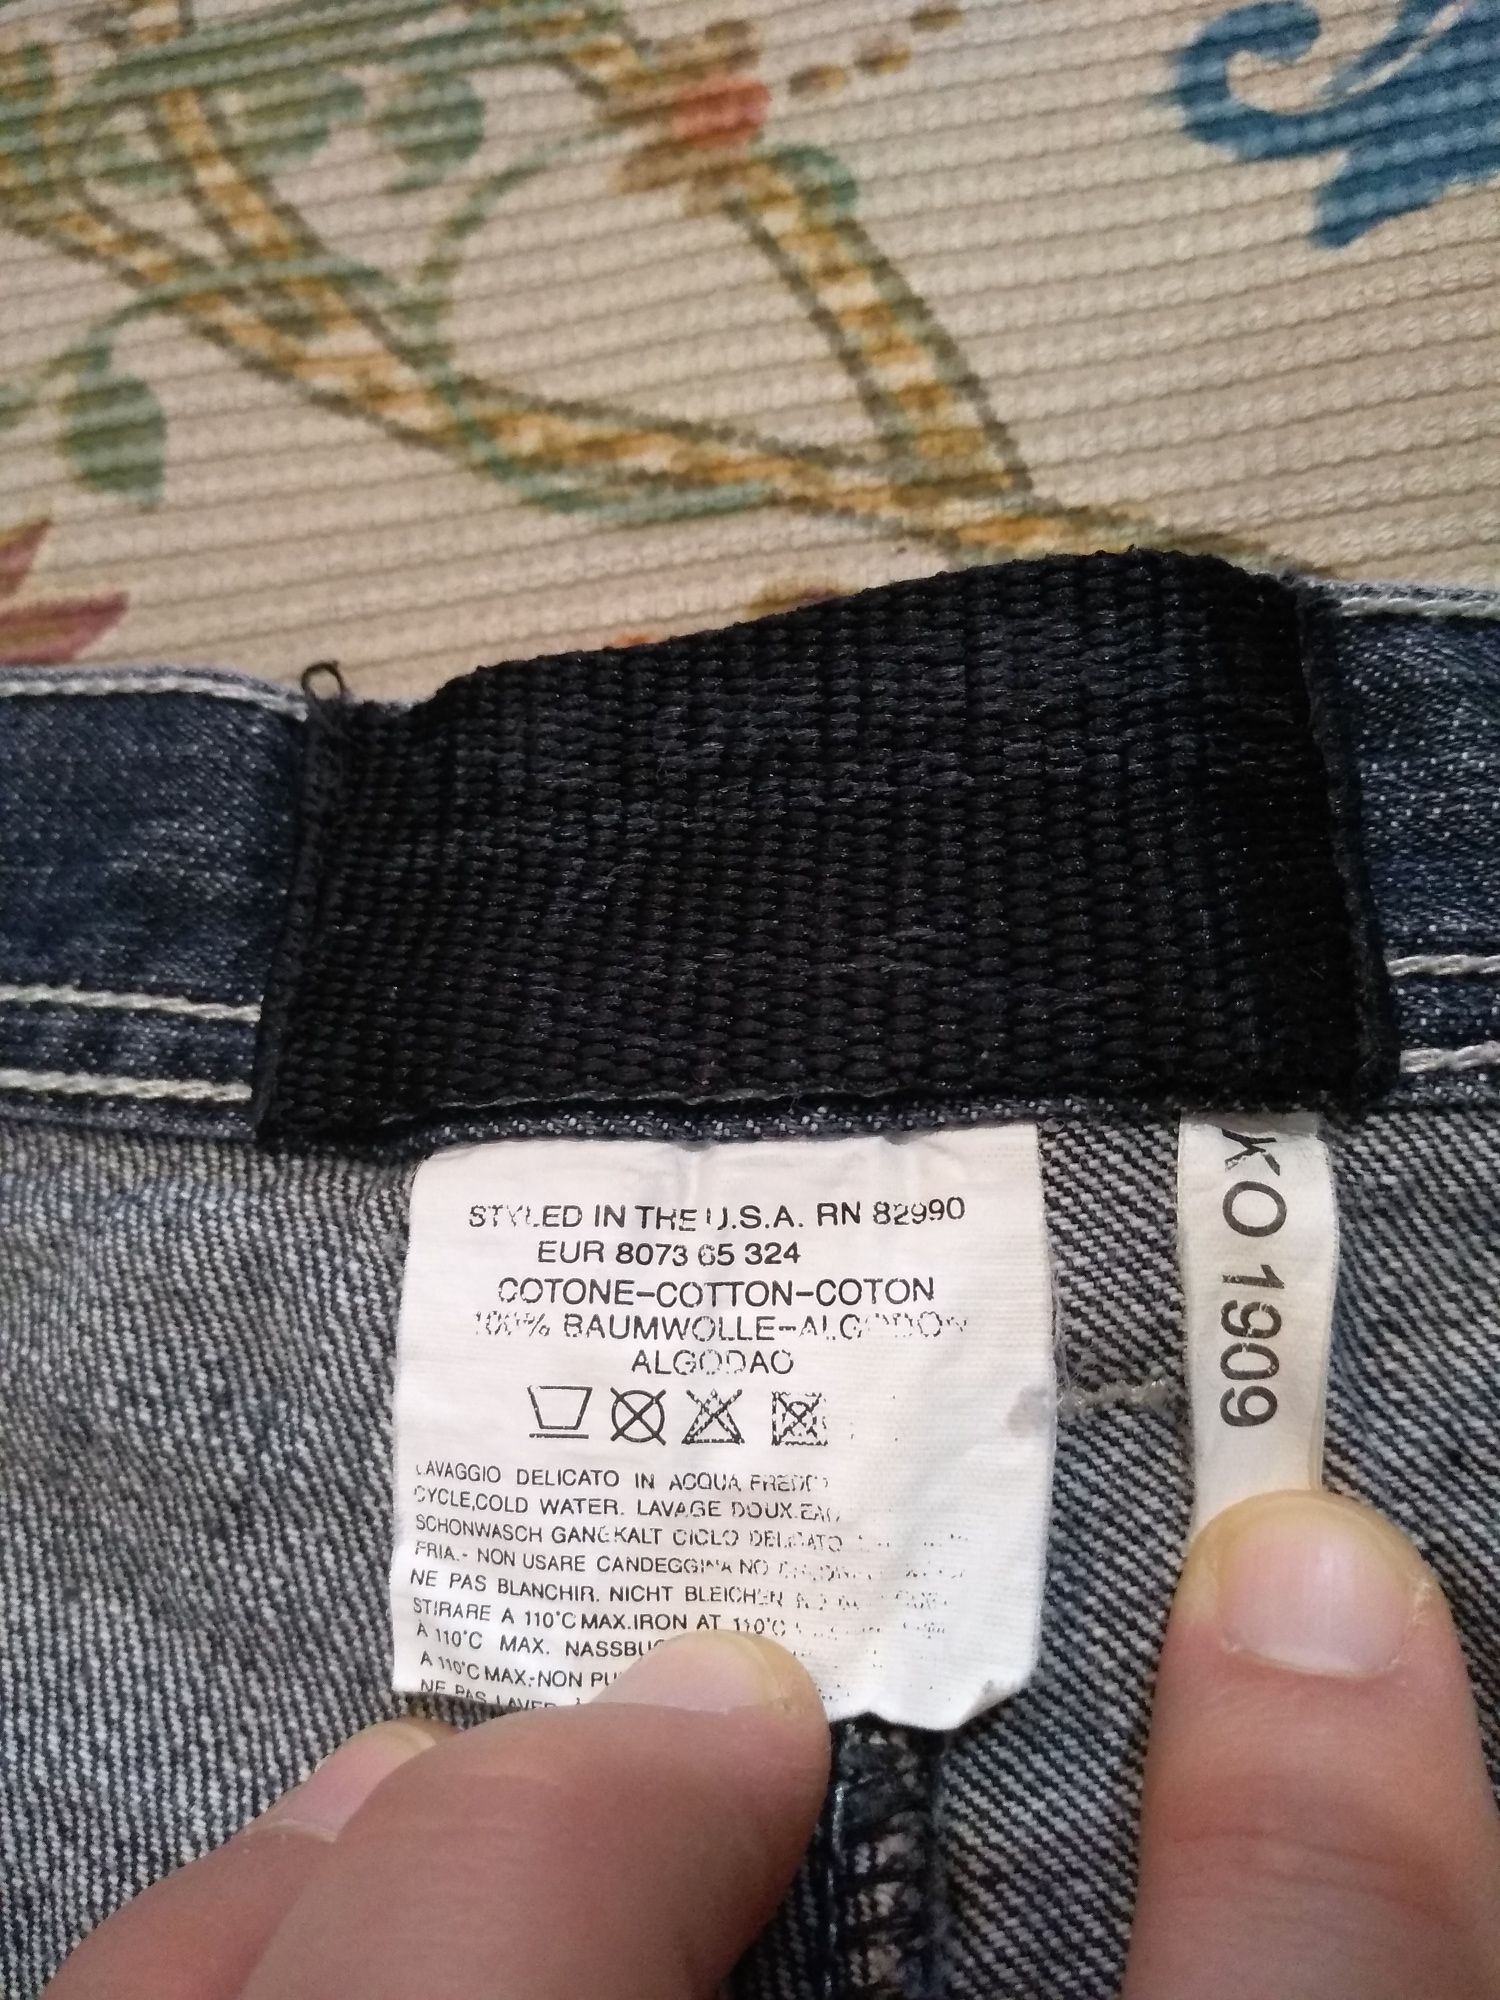 Blugi KARL KANI Jeans vintage baggy 38 x 34